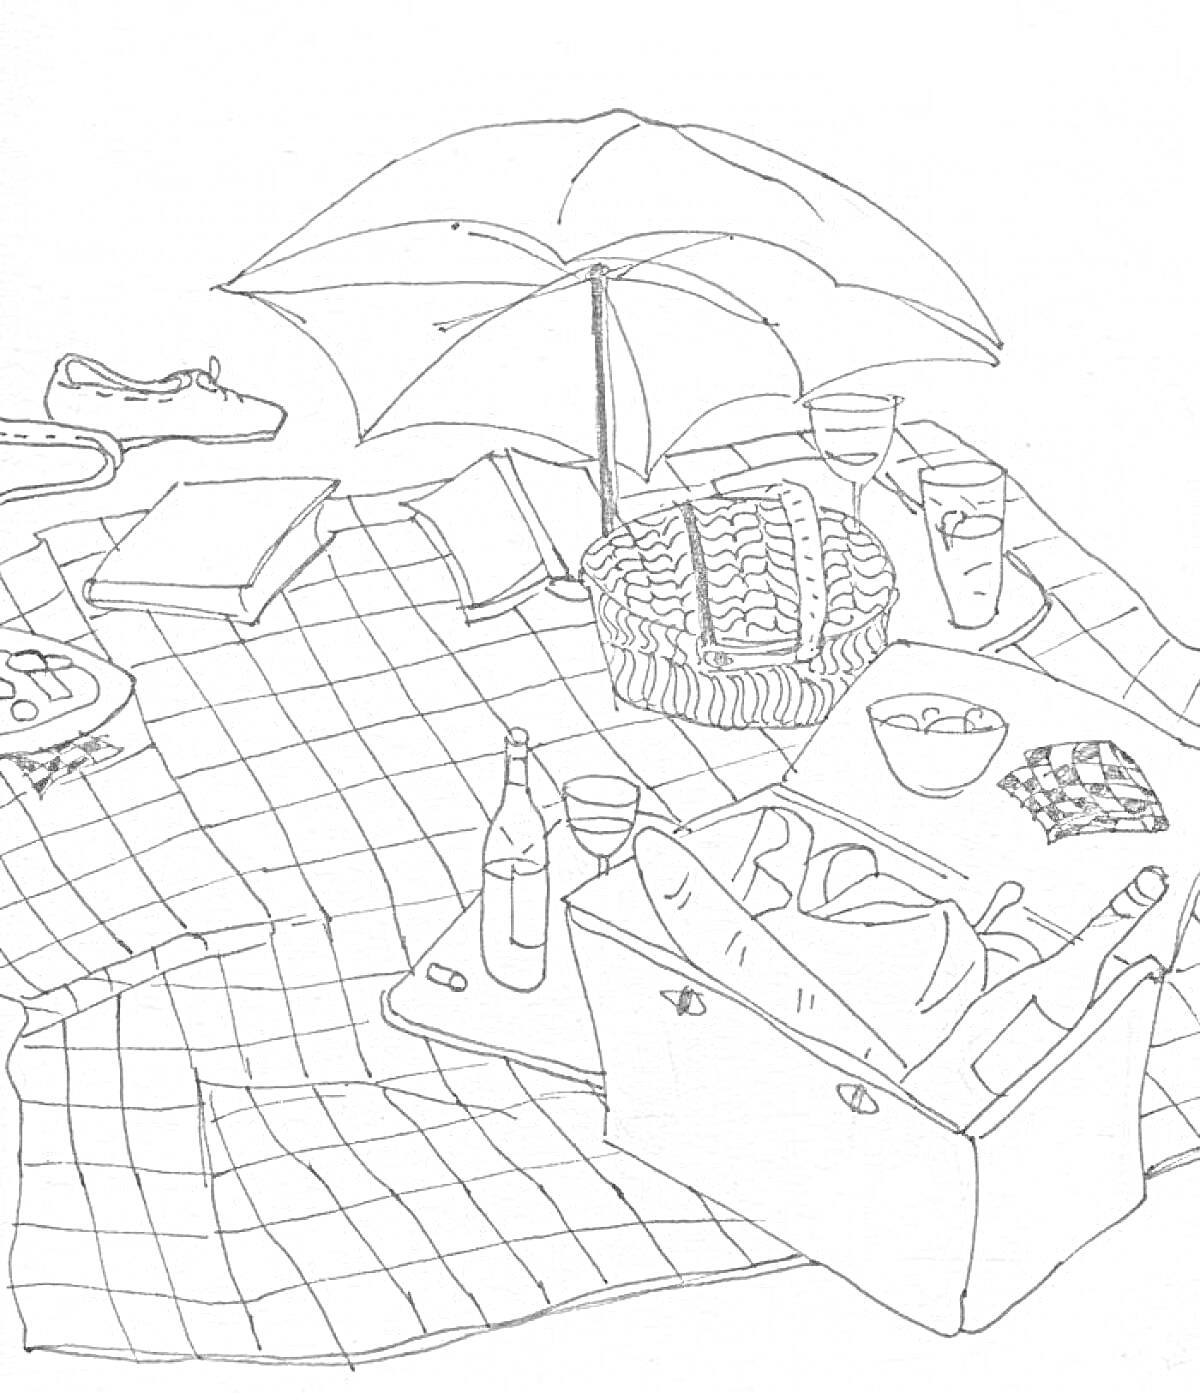 Раскраска Пикник с зонтом, корзиной, бутылками, очками, стаканами, подушками, едой и пледом